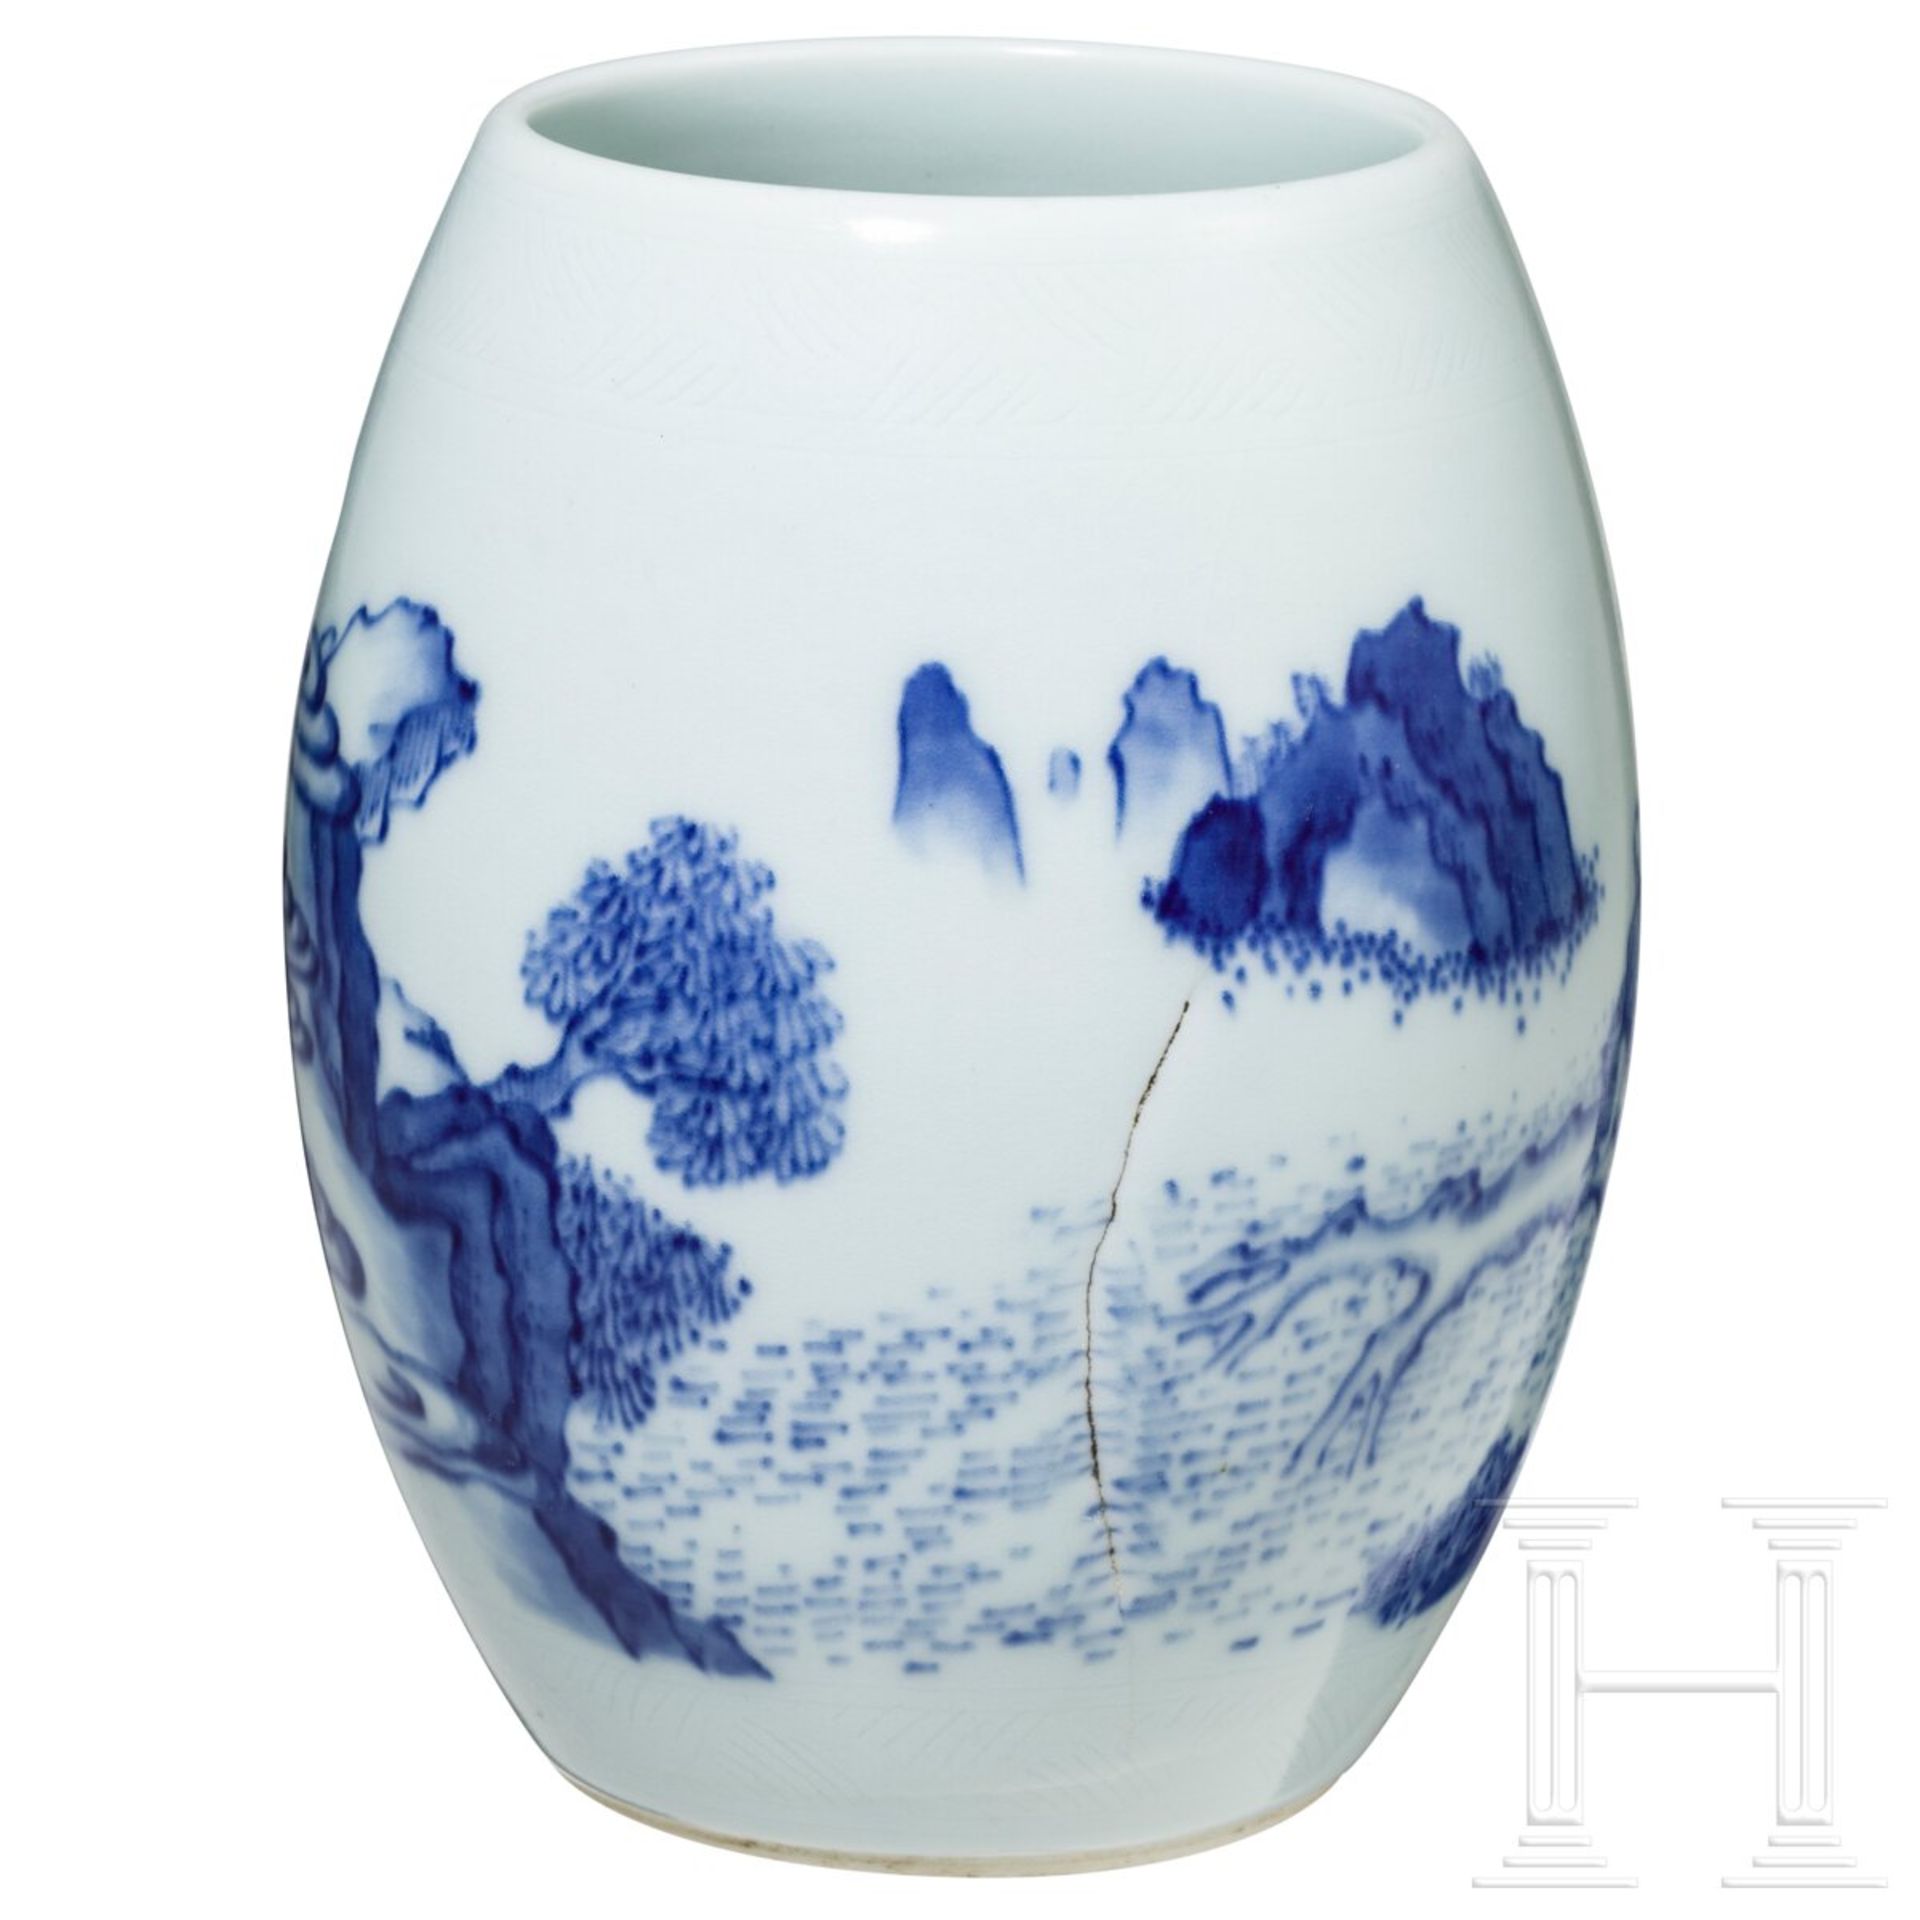 Blau-weiße Vase mit Gelehrtenszene, China, wahrscheinlich Kangxi-Periode (1661 - 1722) oder später - Bild 3 aus 14